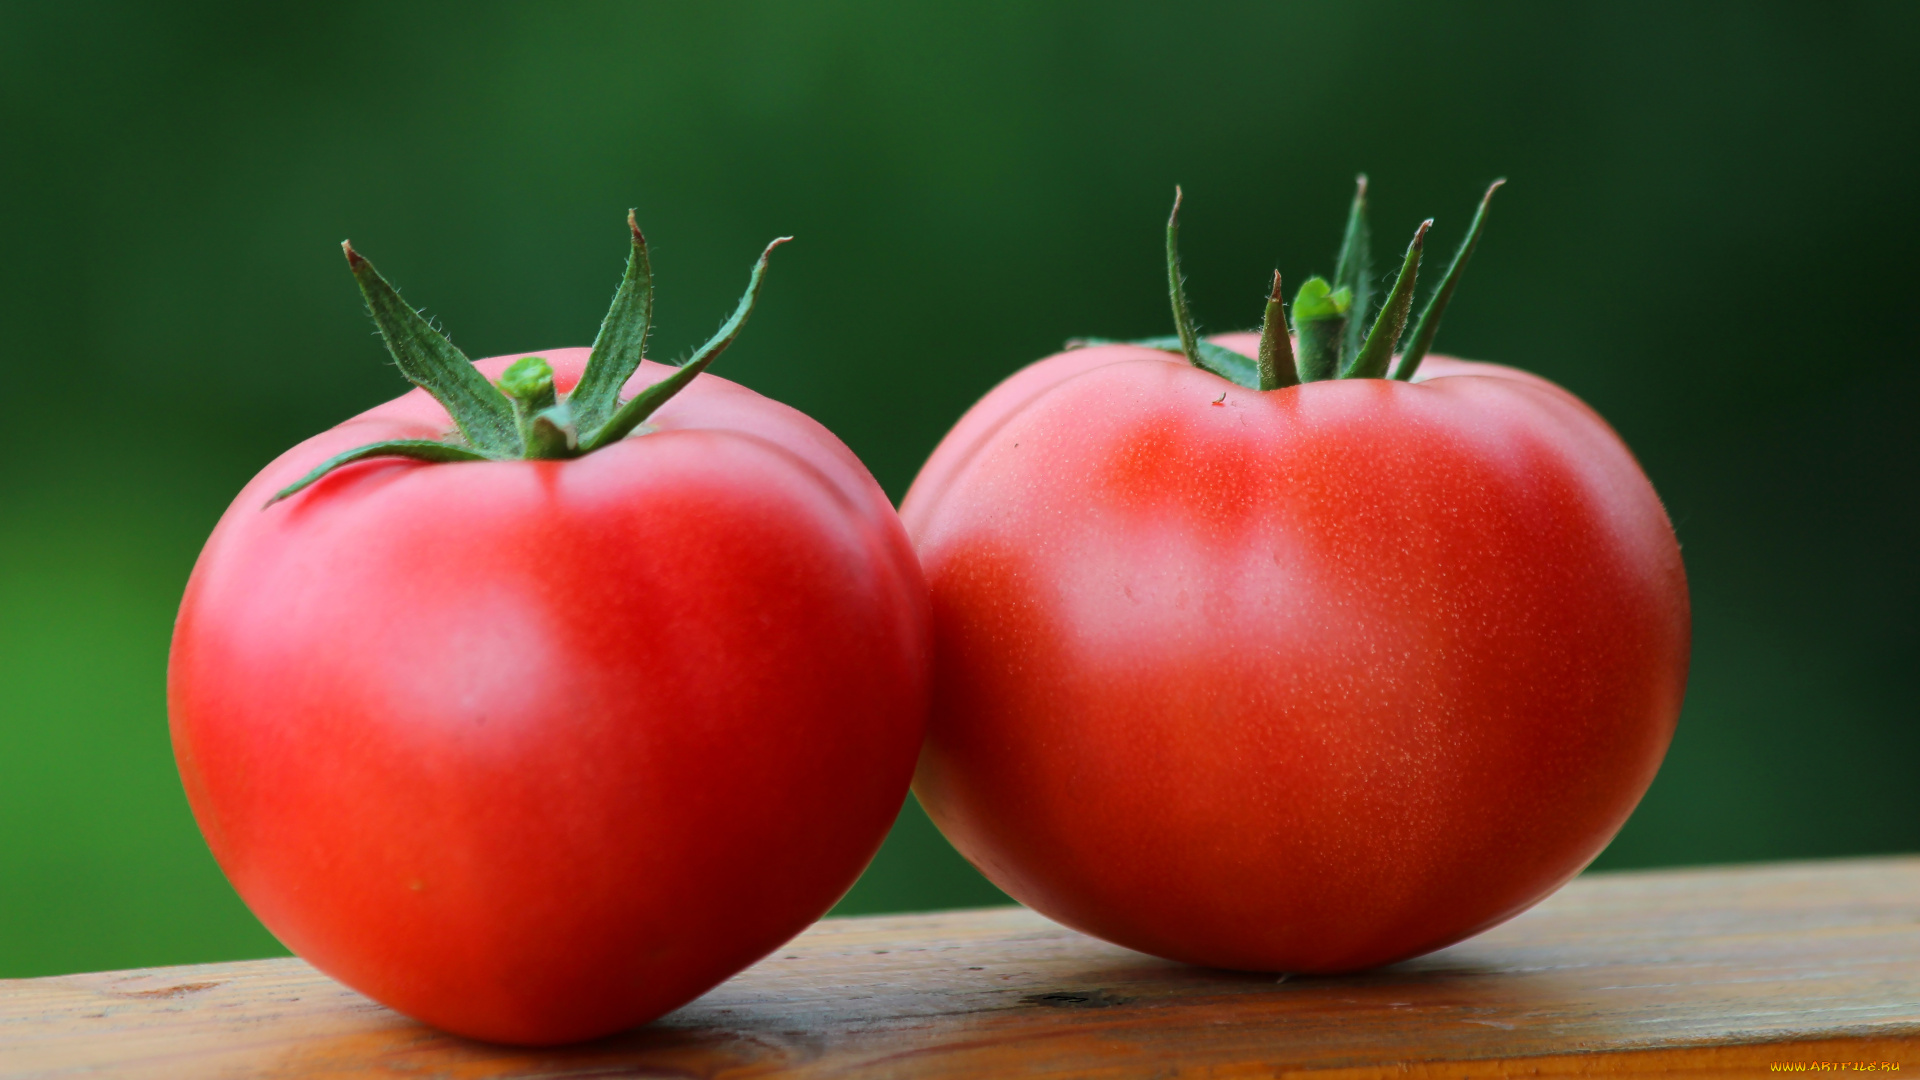 еда, помидоры, дача, урожай, томаты, своё, природа, овощи, лето, вкусно, витамины